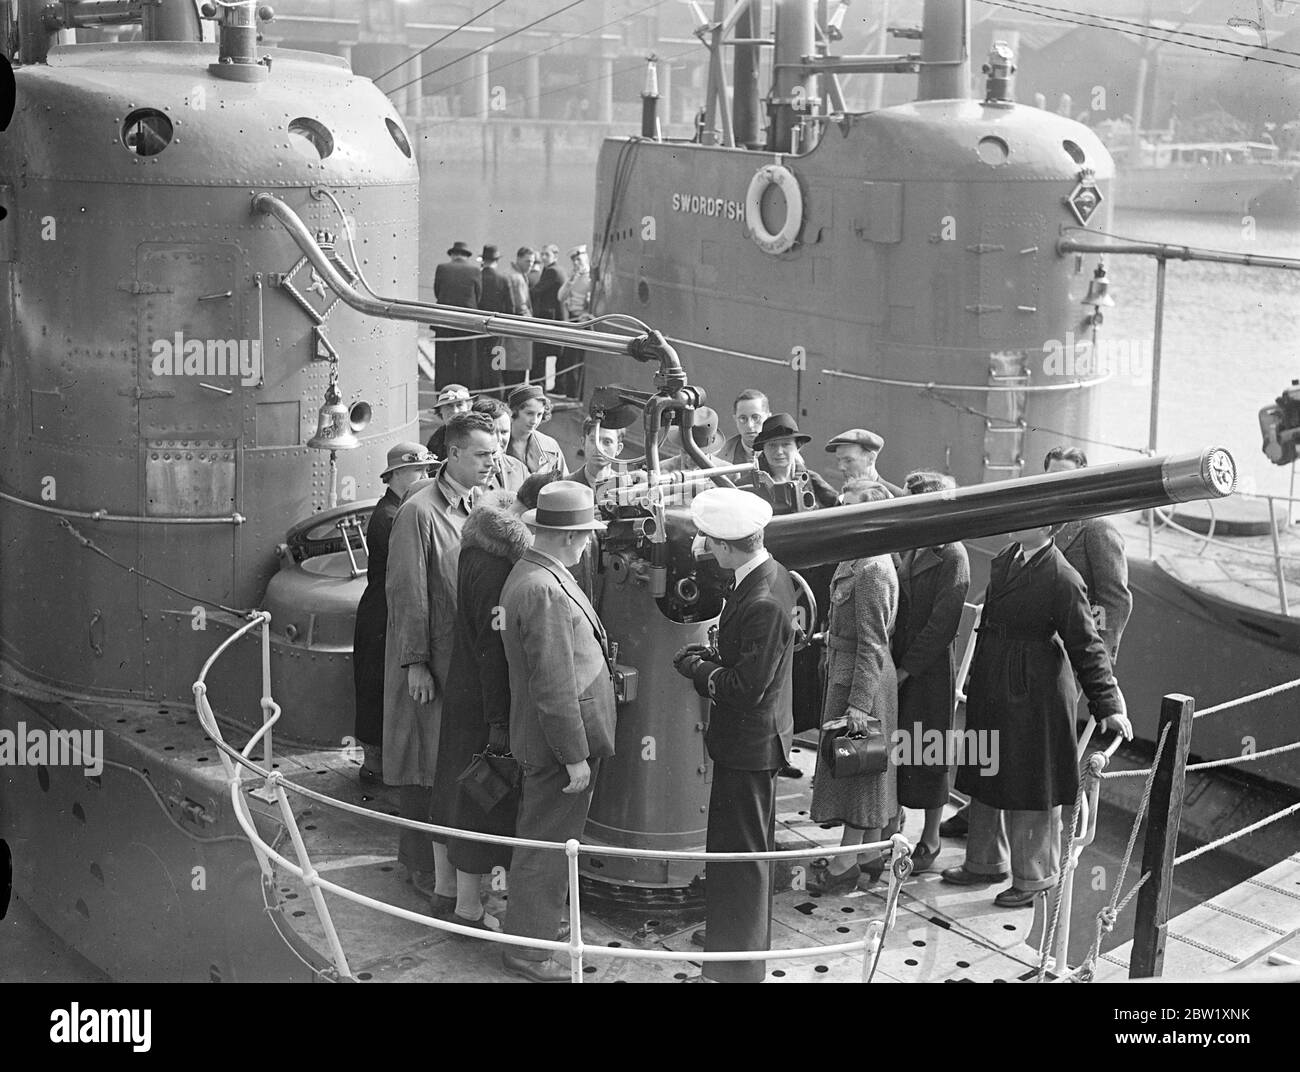 London sieht die Marine. U-Boote in Dock in der Nähe der Tower Bridge. Die U-Boote der Heimatflotte, die im Pool von London zur Krönung stationiert waren, wurden nur wenige Stunden nach ihrer Ankunft für die Besichtigung geöffnet. Fotoausstellungen: Offiziere erklären Besuchern an Bord des U-Bootes HMS Starfish (19S) im St Katharine's Dock, London, die Waffen. Ein weiteres U-Boot der Gruppe 1 der britischen S-Klasse HMS Swordfish (61S) ist im Hintergrund. Mai 1937 Stockfoto